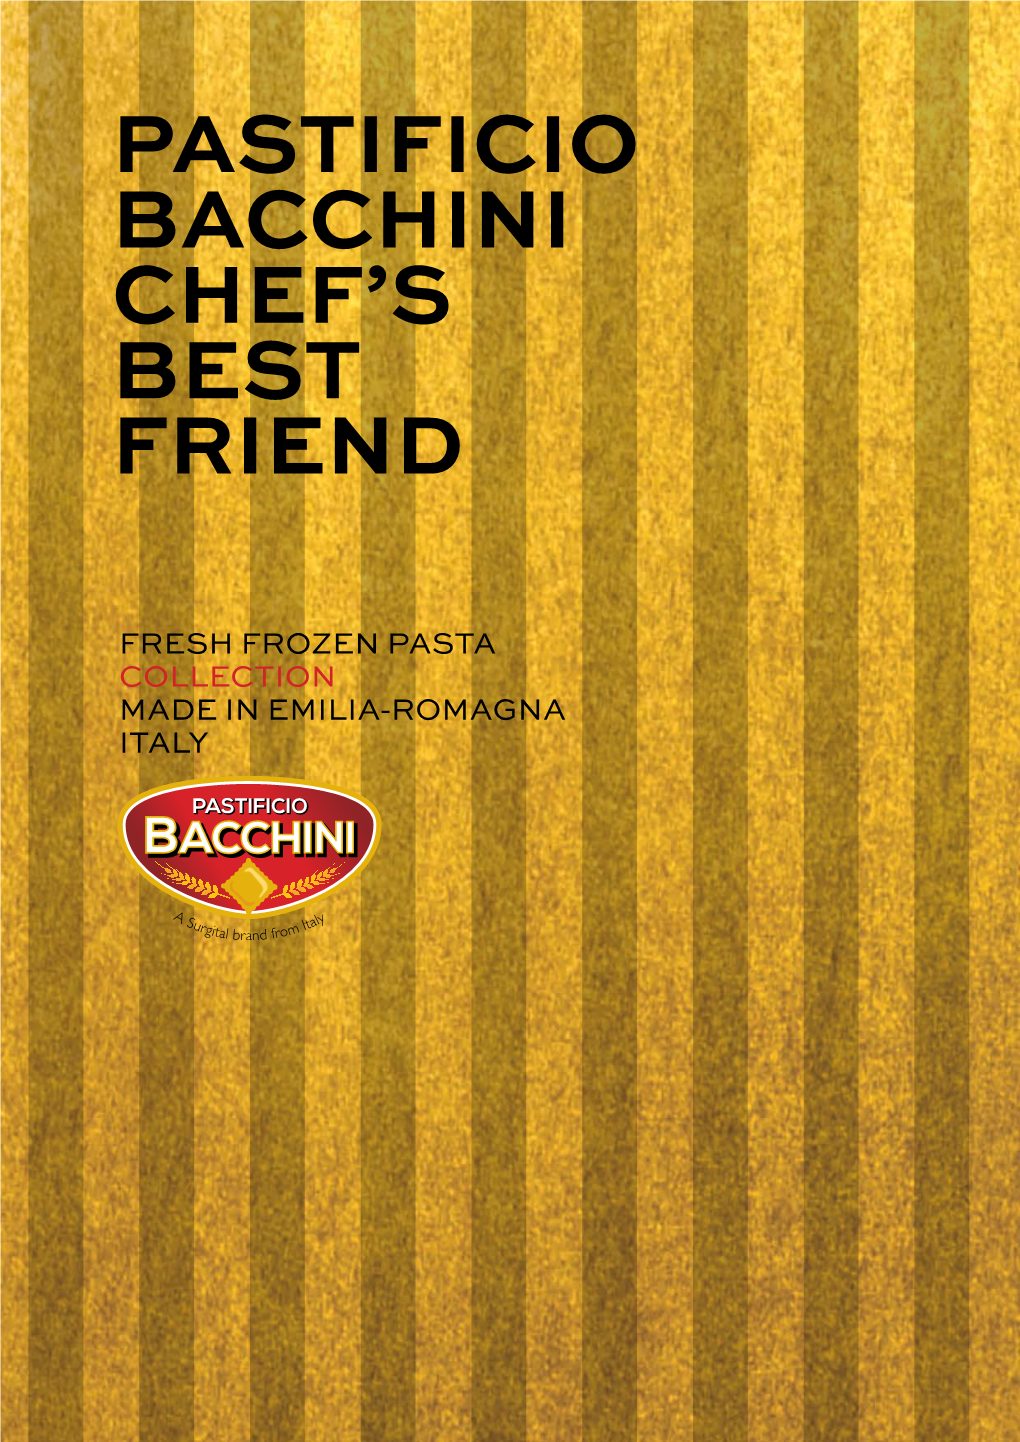 Pastificio Bacchini Chef's Best Friend